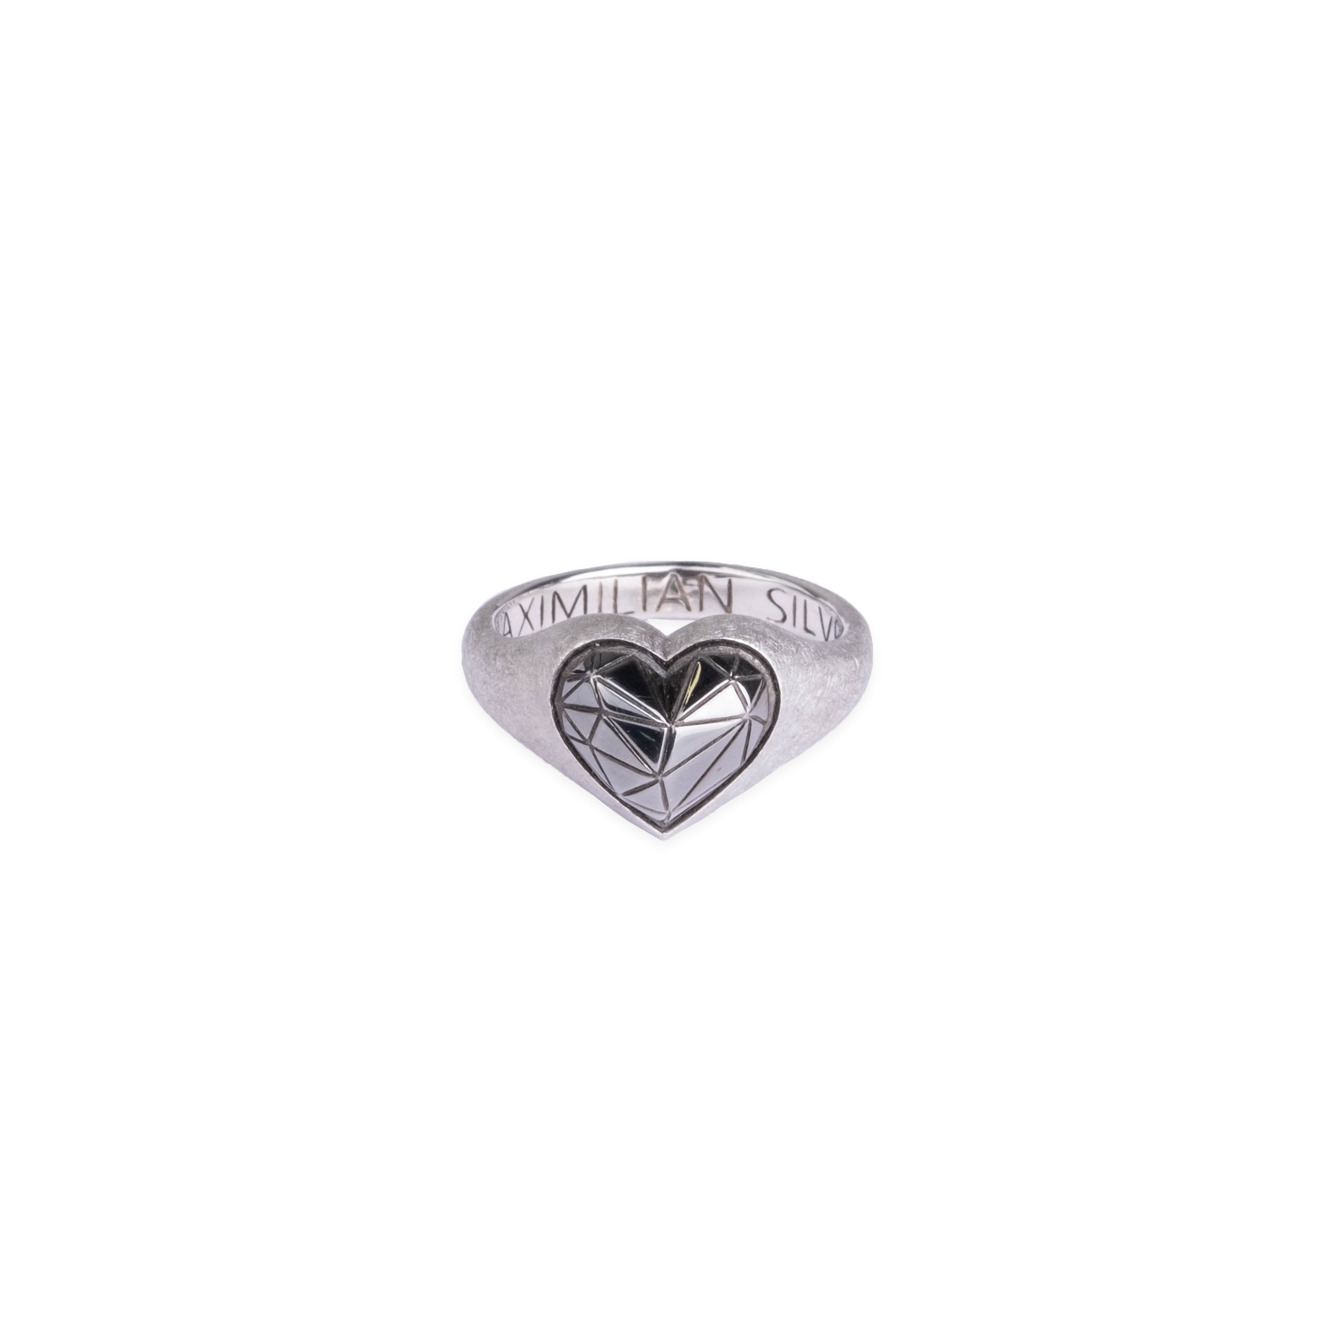 Maximilian Silver Label Матовое кольцо из серебра maximilian silver label колье пиковая дама из серебра с жемчужиной